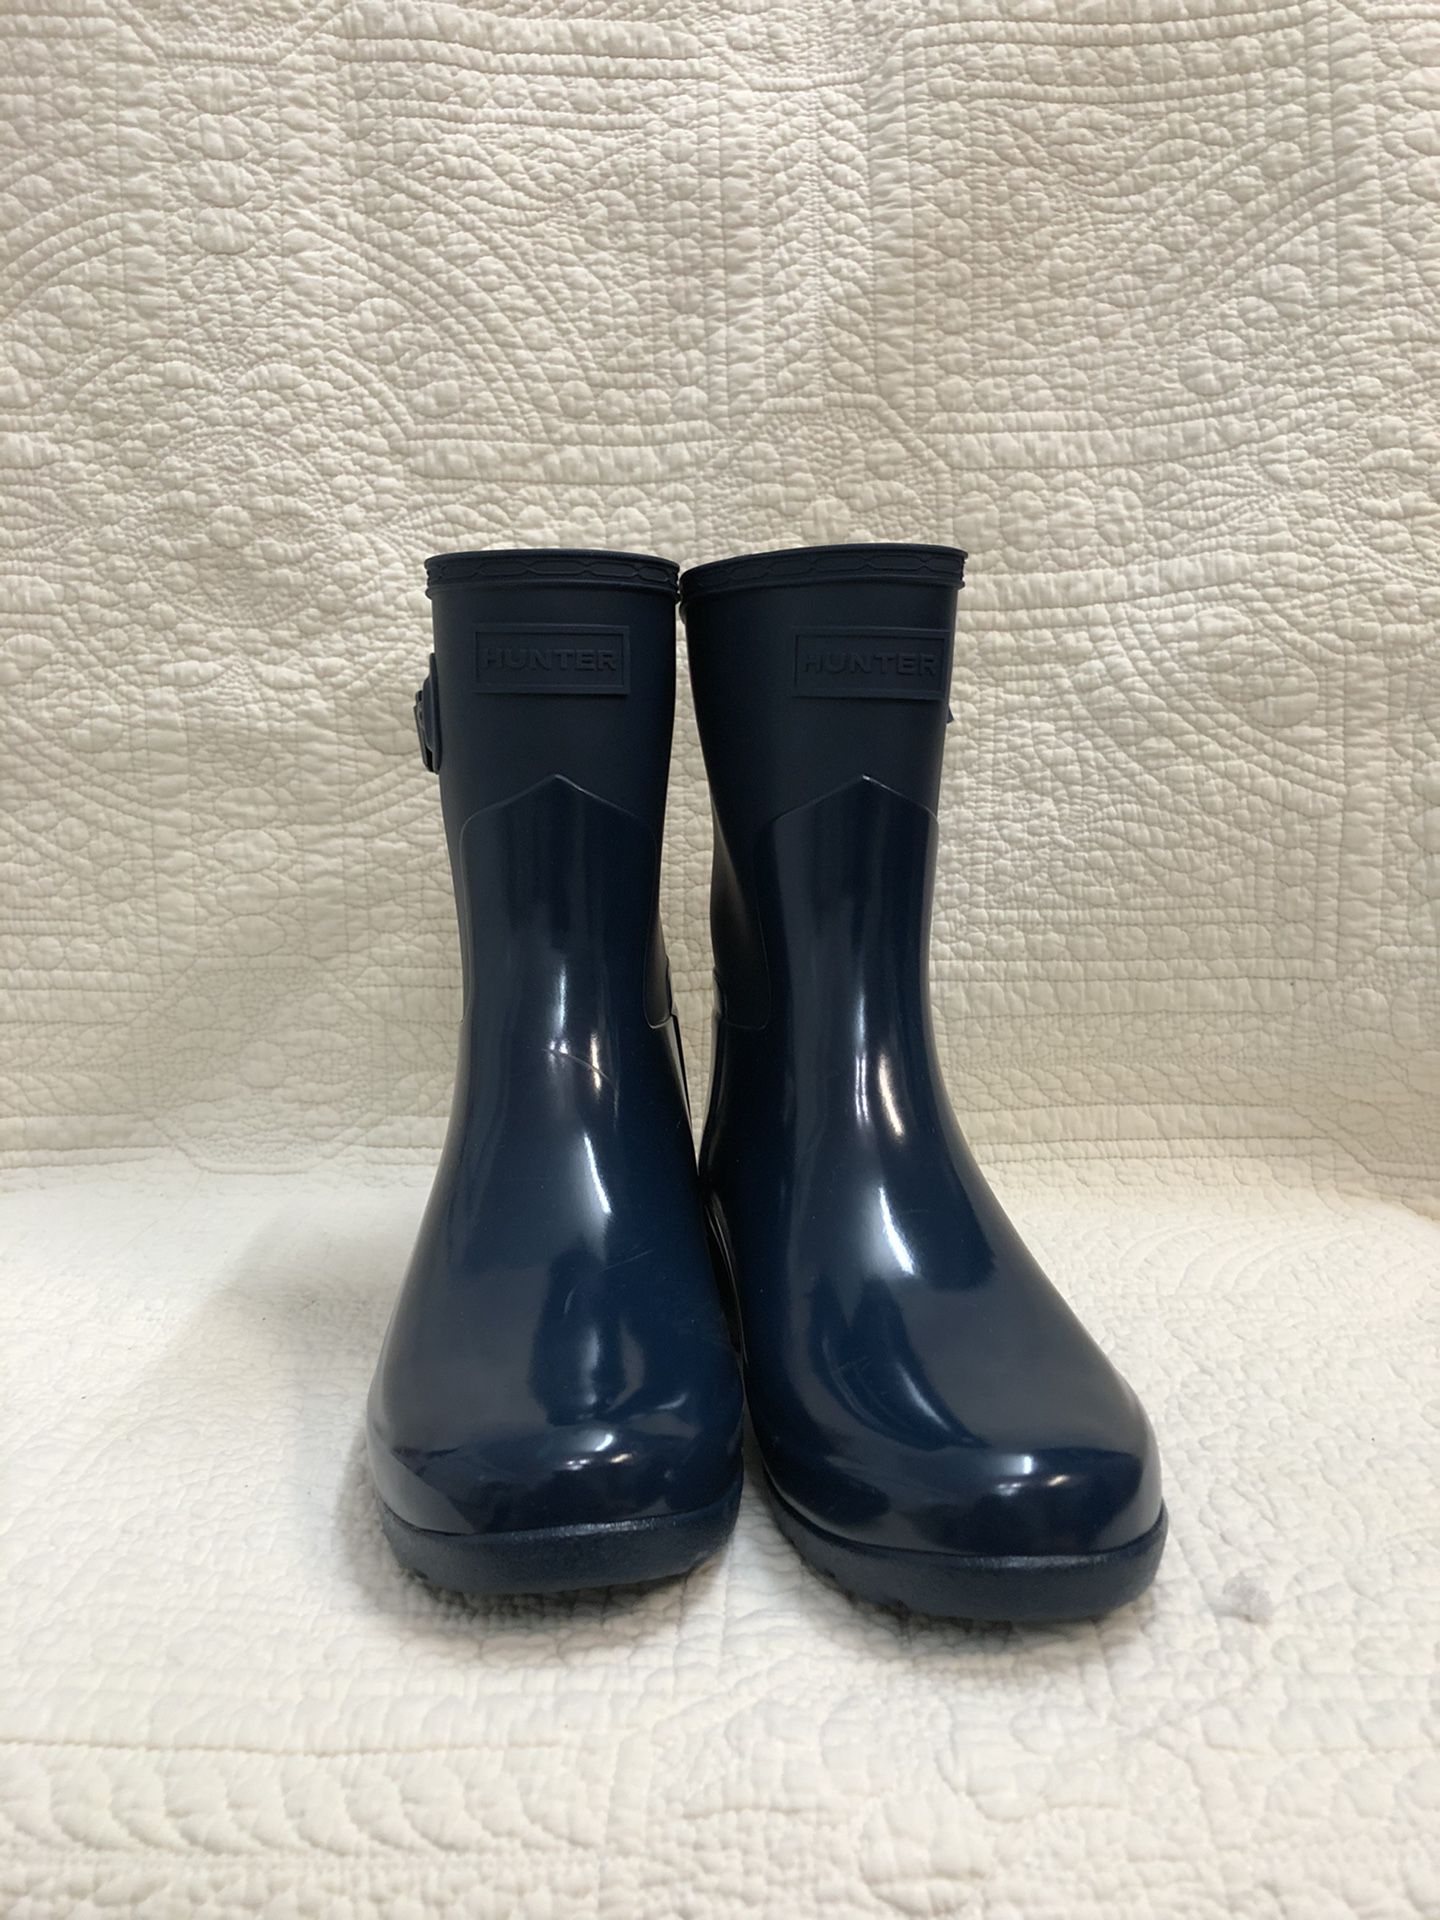 Hunter rain boots size 6